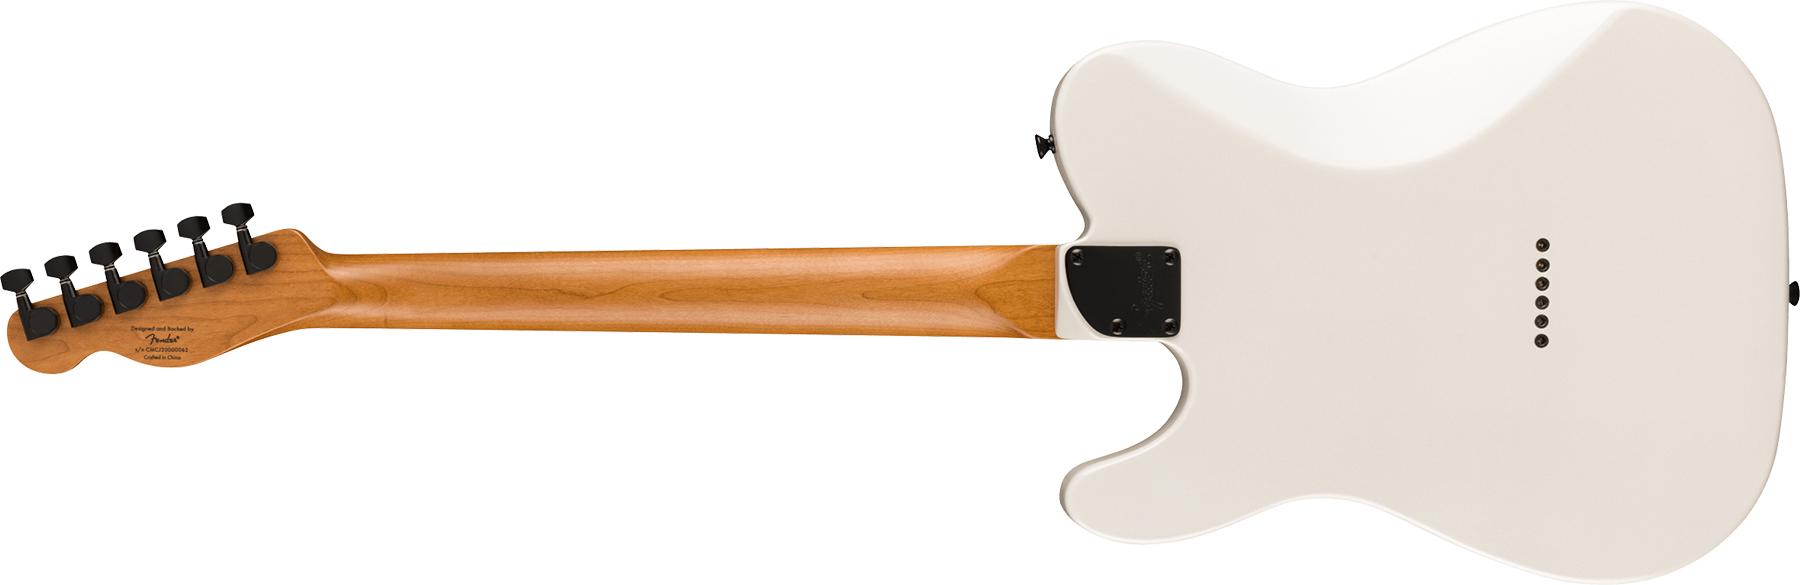 Squier Tele Contemporary Rh Hh Ht Mn - Pearl White - Guitarra eléctrica con forma de tel - Variation 1